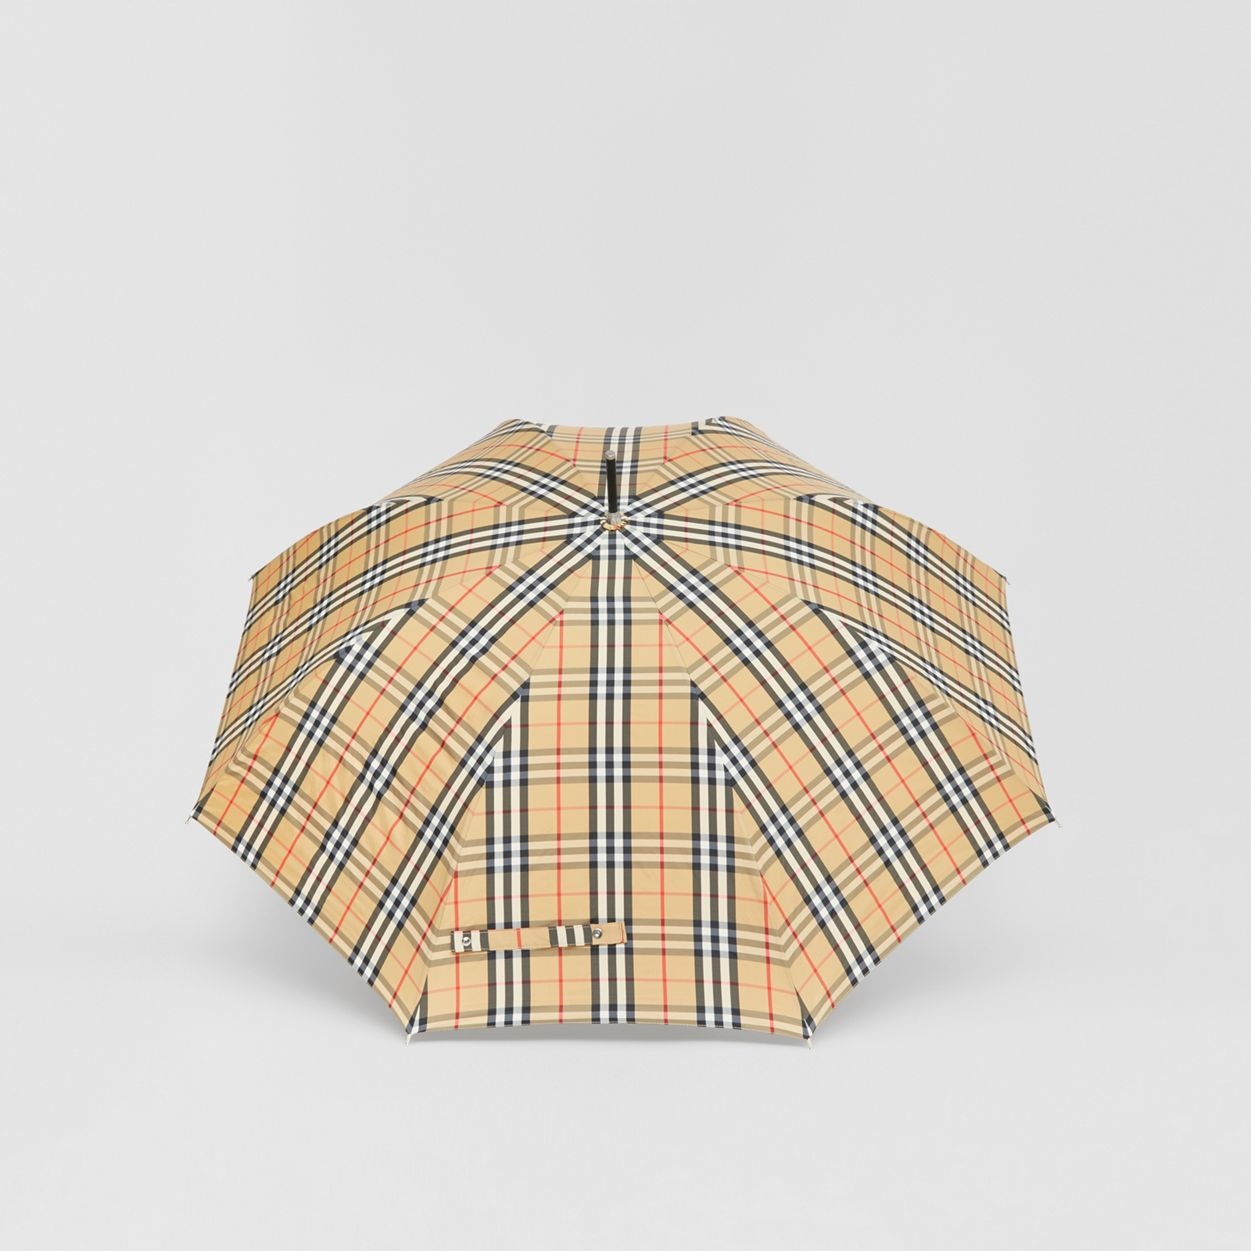 Vintage Check Umbrella - 5